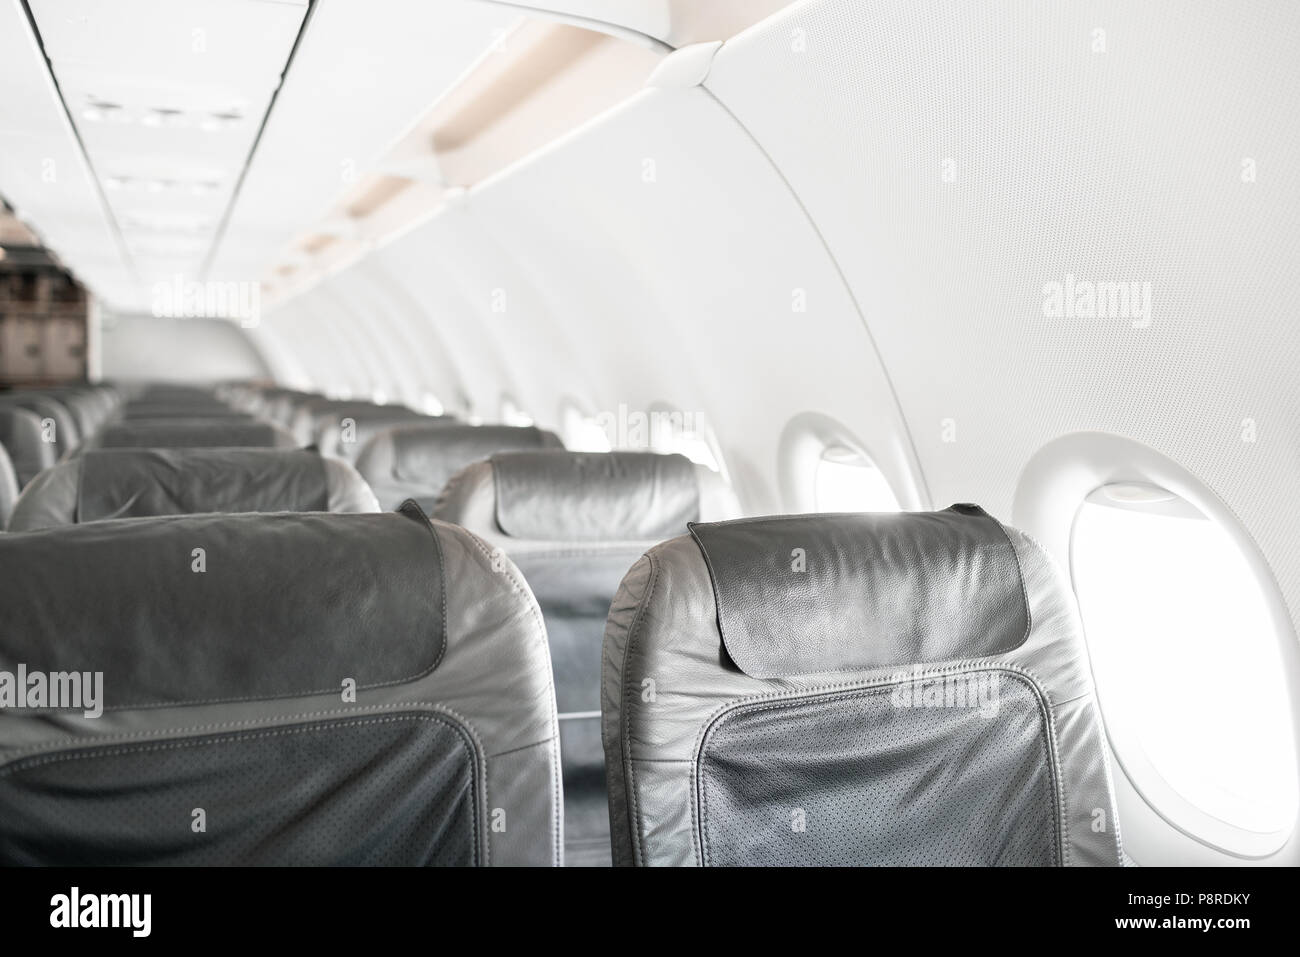 Los asientos de los aviones vacíos en la cabina. Los asientos de los aviones modernos en perspectiva. Concepto de transporte. Los aviones de larga distancia de vuelo internacional Foto de stock